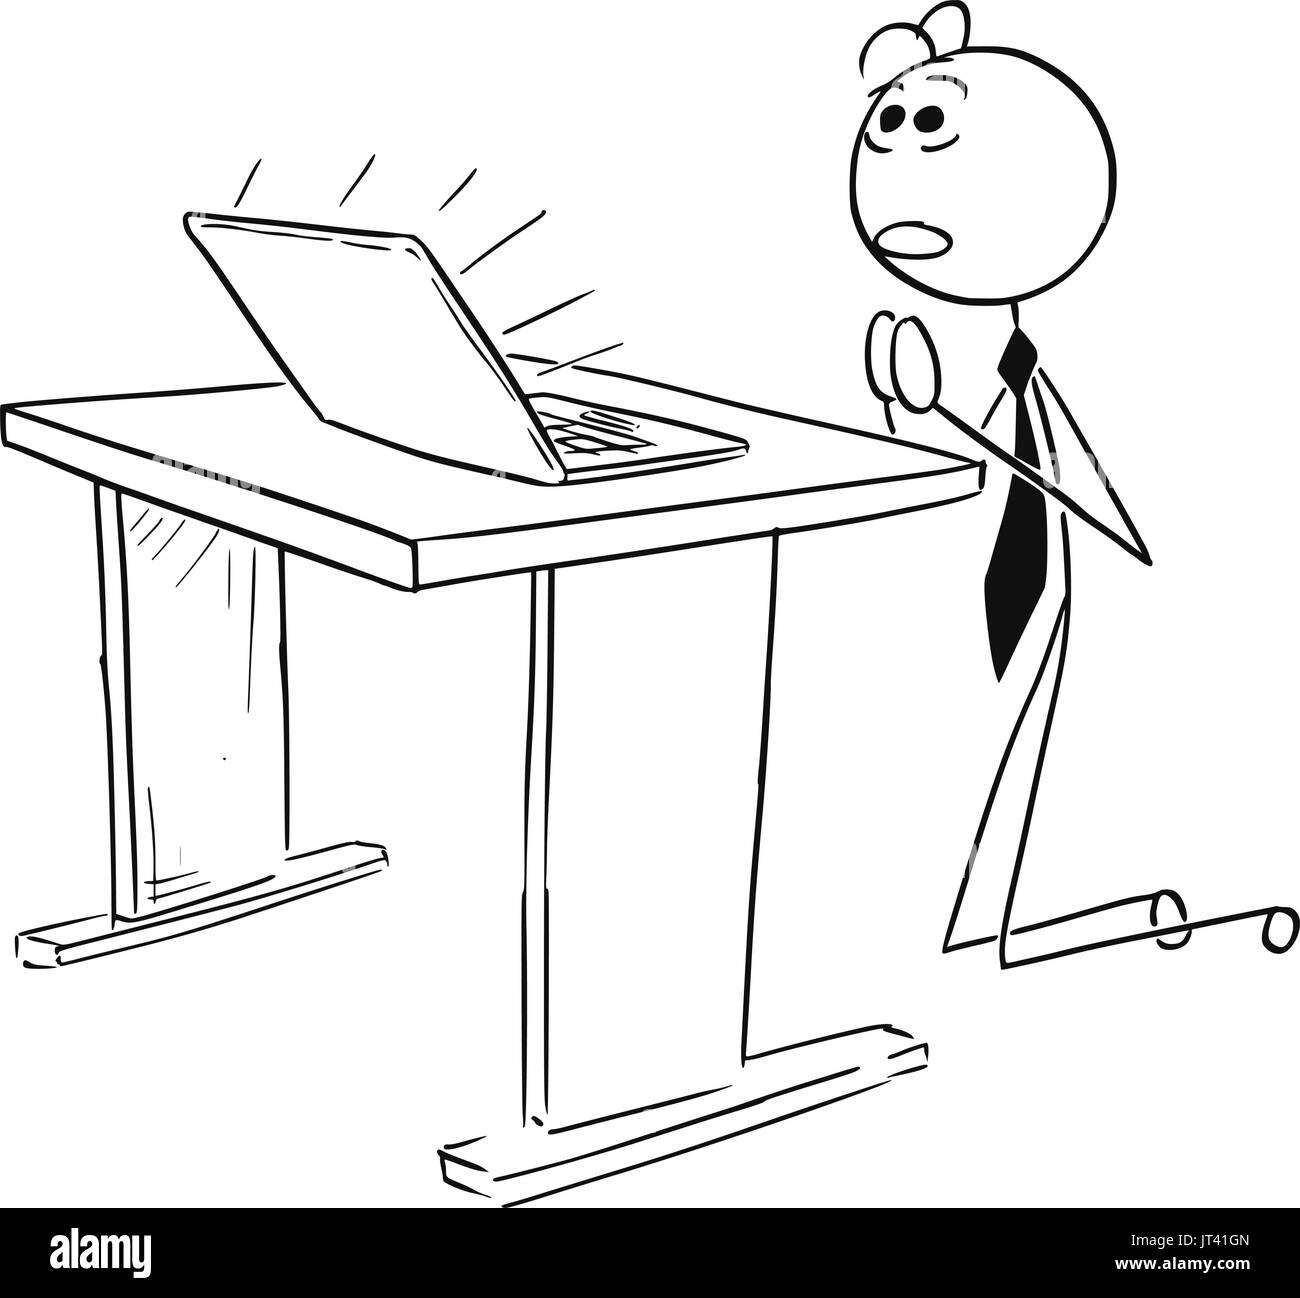 Cartoon Stick Mann Vektorgrafik Geschäftsmannes kniend und betend vor dem Computer Notebook, konzeptionelle Idee des Online-Geschäfts. Stock Vektor